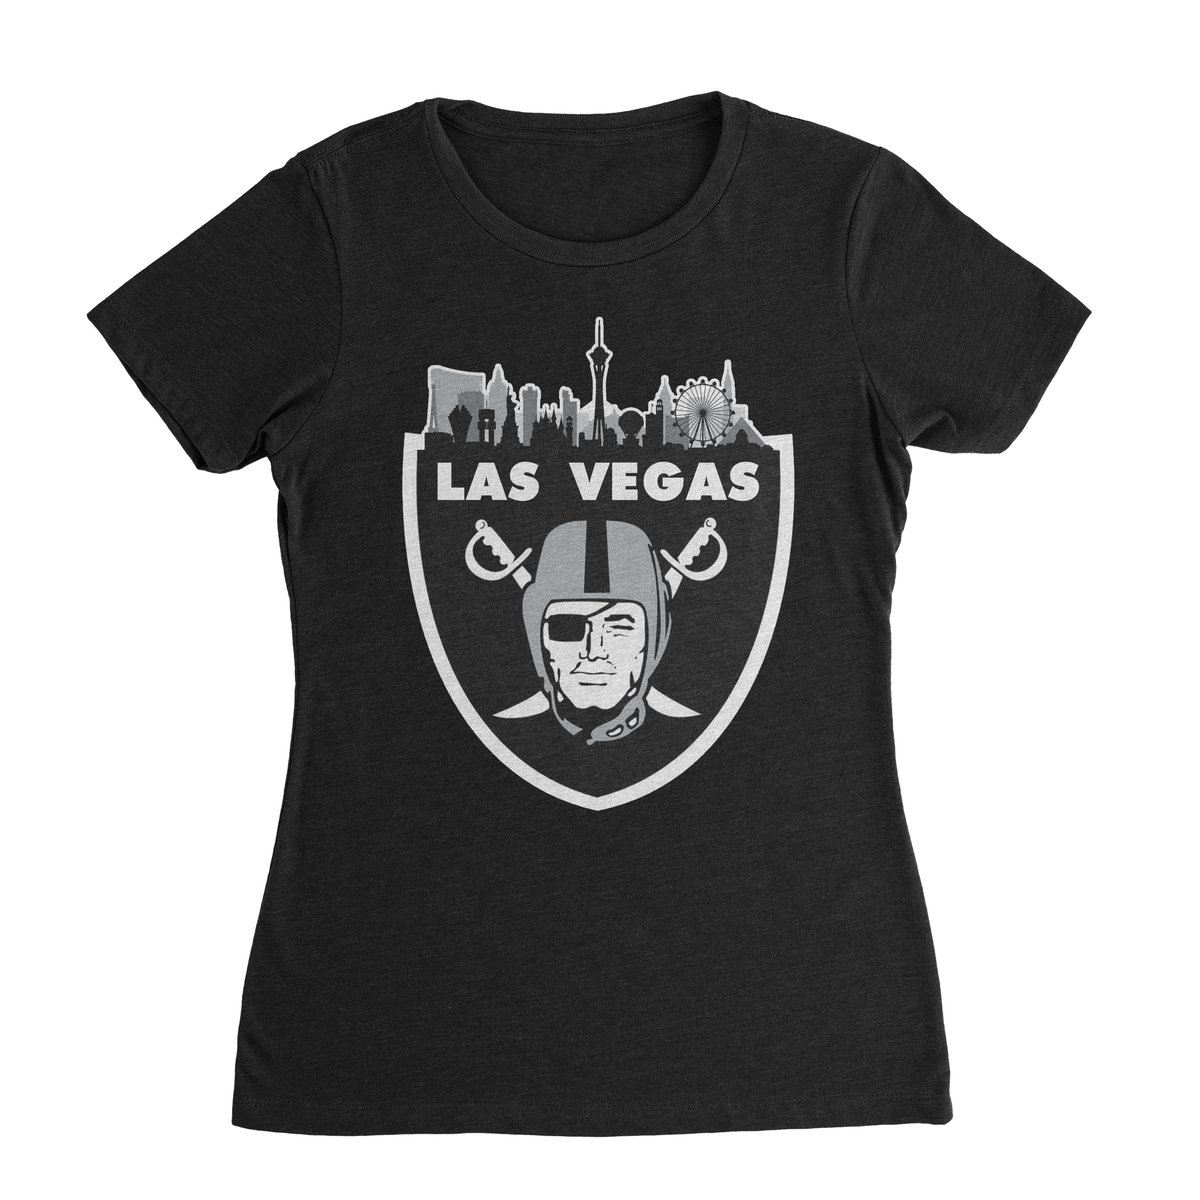 Skyline Las Vegas Raiders Sweatshirt 